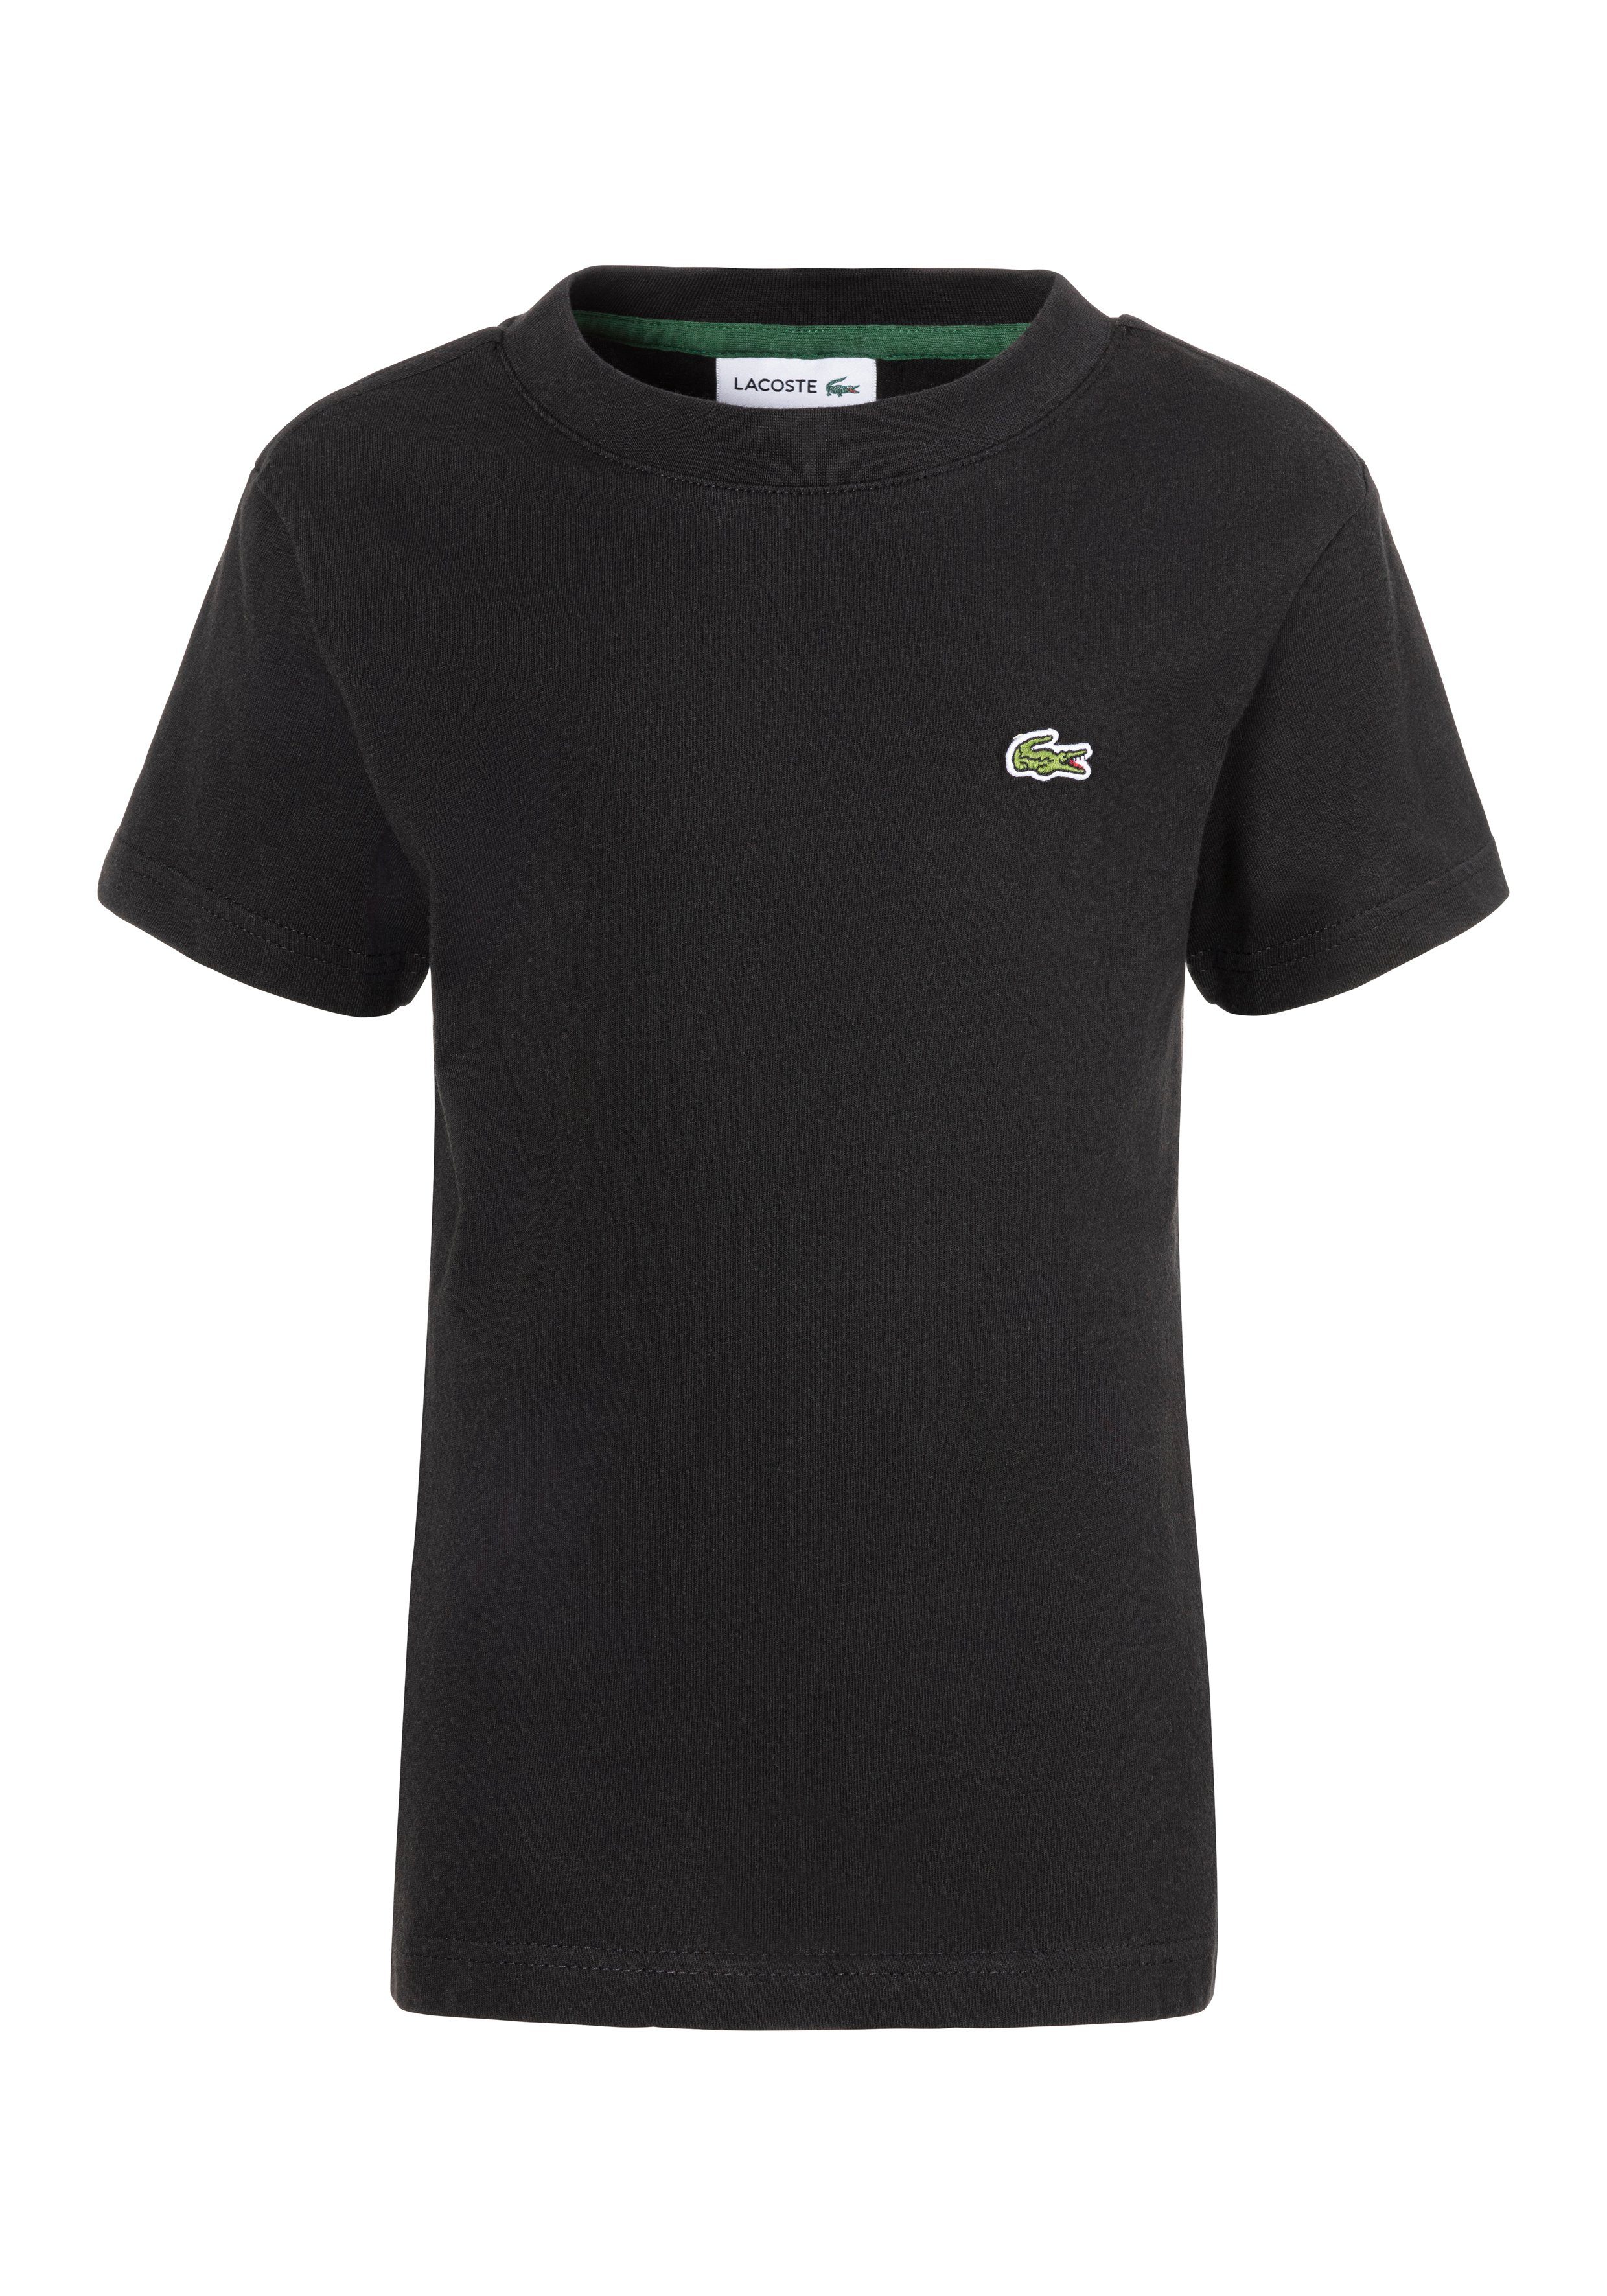 Lacoste T-shirt met logo zwart Biologisch katoen Ronde hals Logo 152